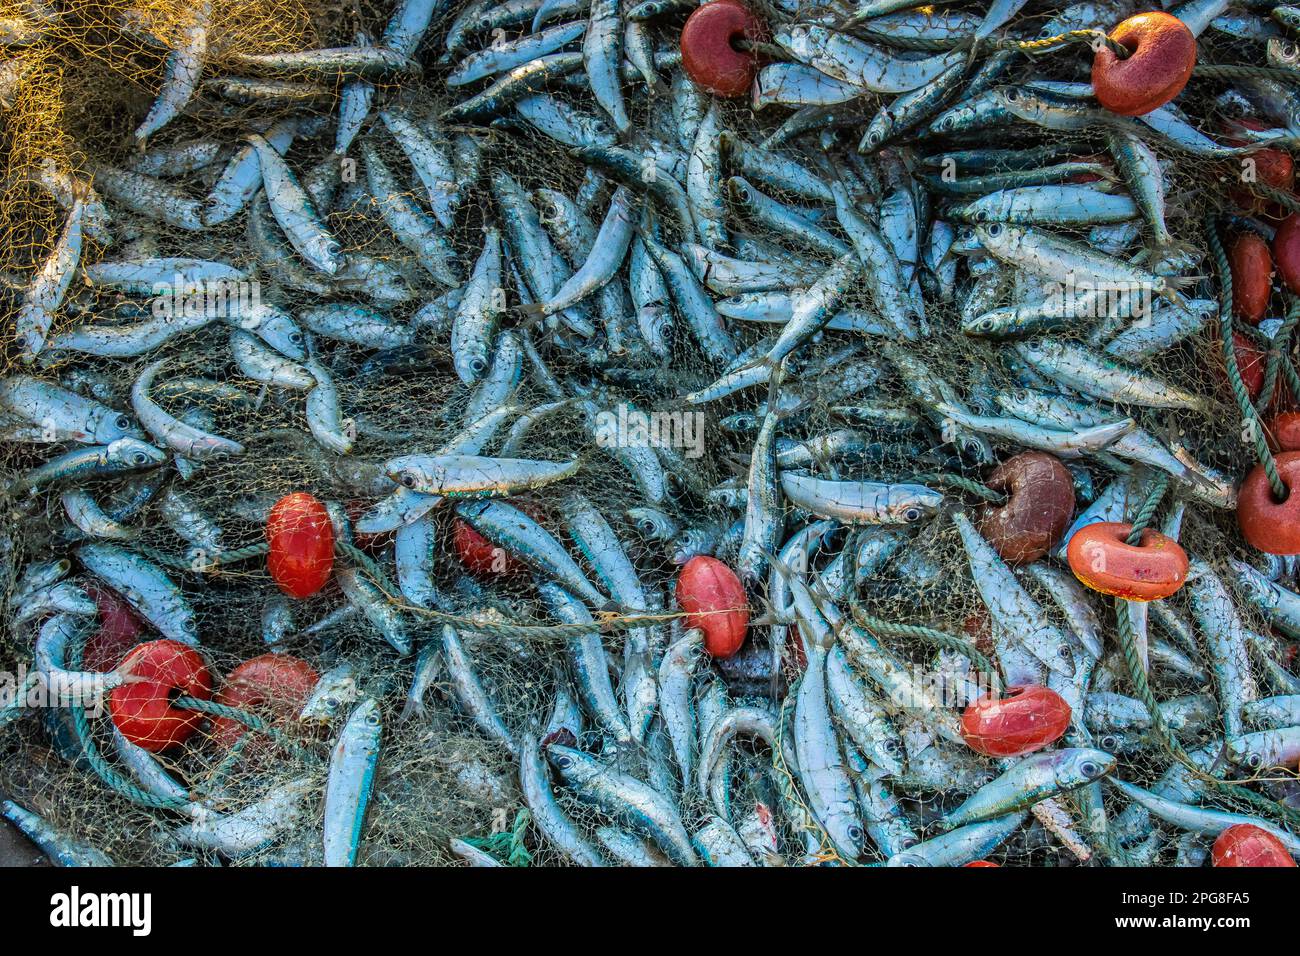 Pescado capturado en una red de pesca Foto de stock